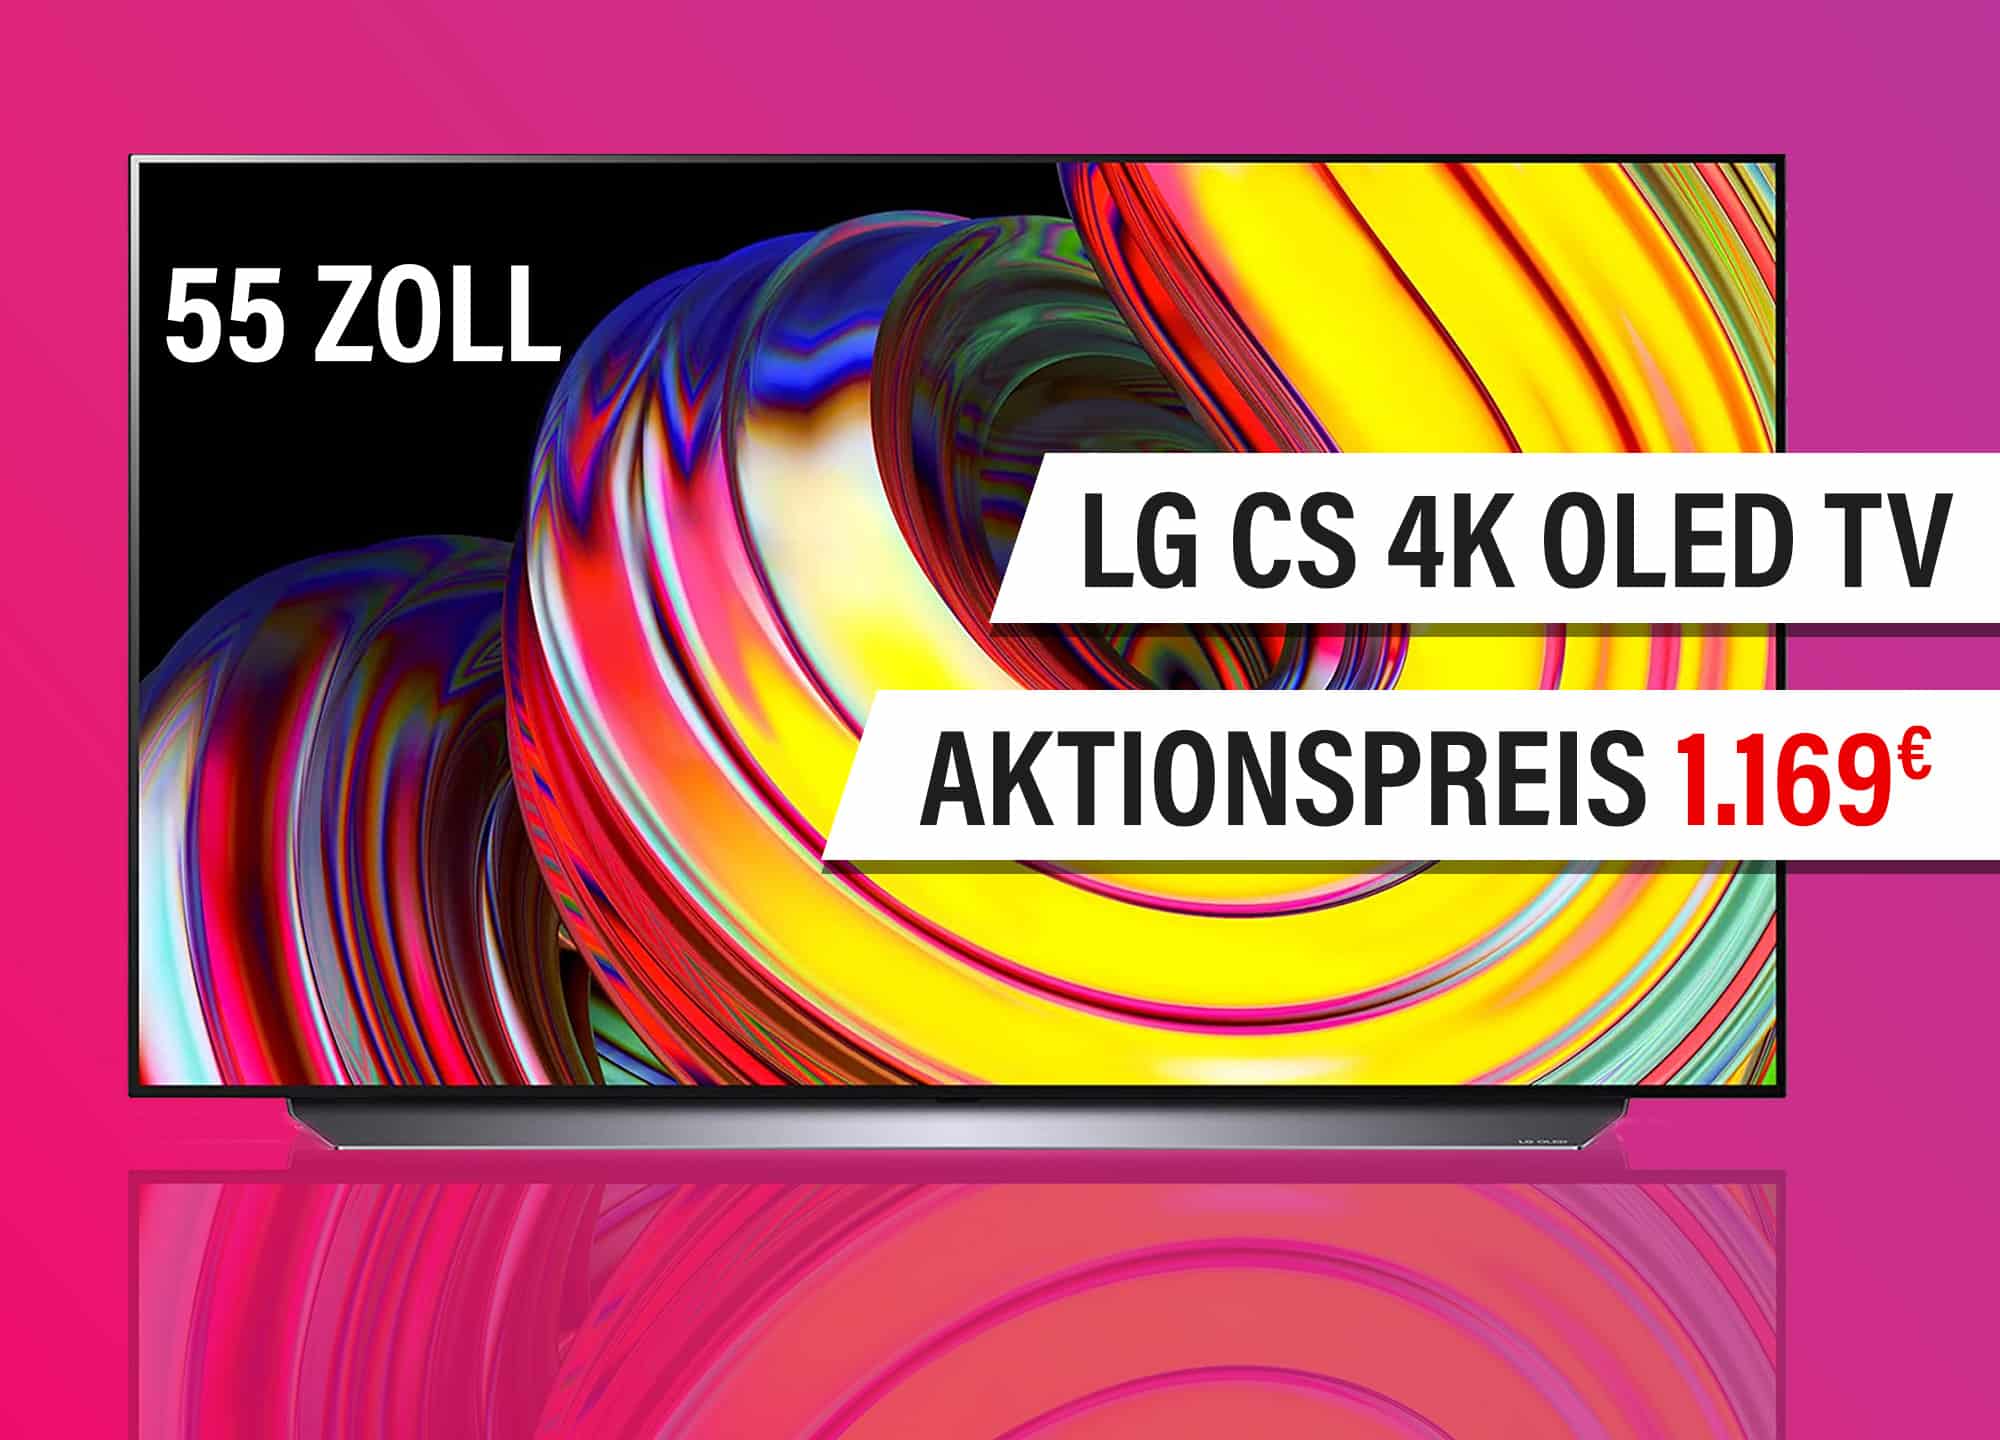 LG CS 4K OLED mit 55 Zoll im Tagesangebot: Zugreifen oder lieber